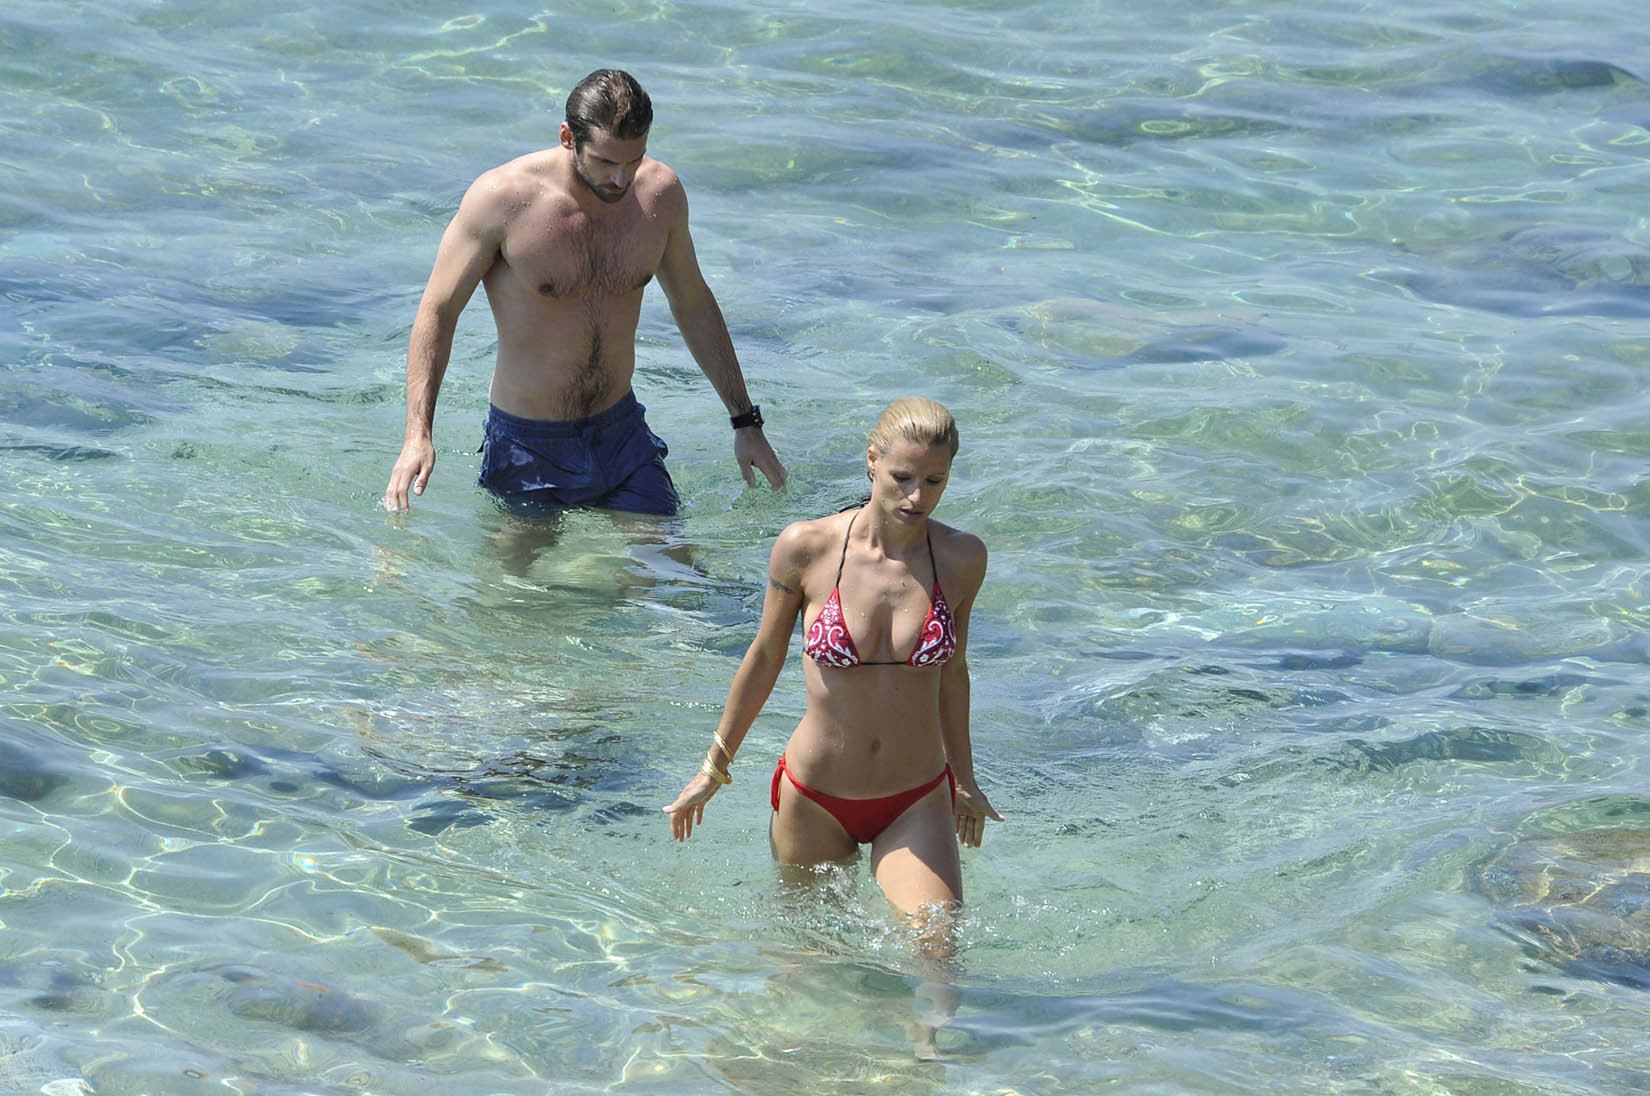 Michelle hunziker tetona con un bikini escaso en la playa de miami
 #75259531